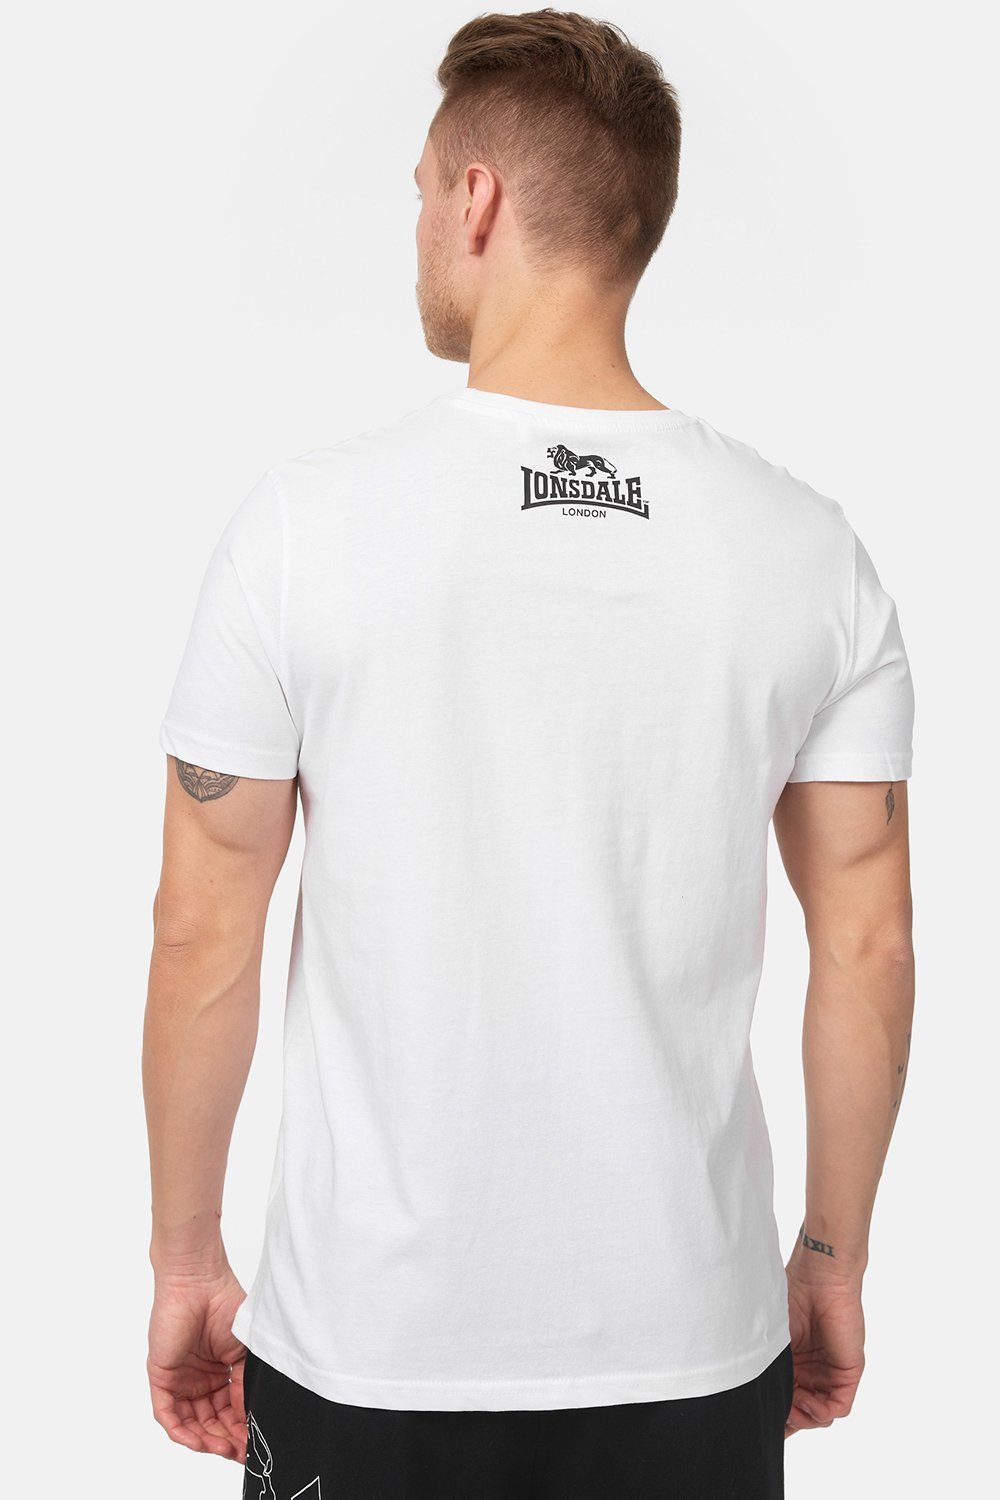 LOGO T-Shirt White Lonsdale